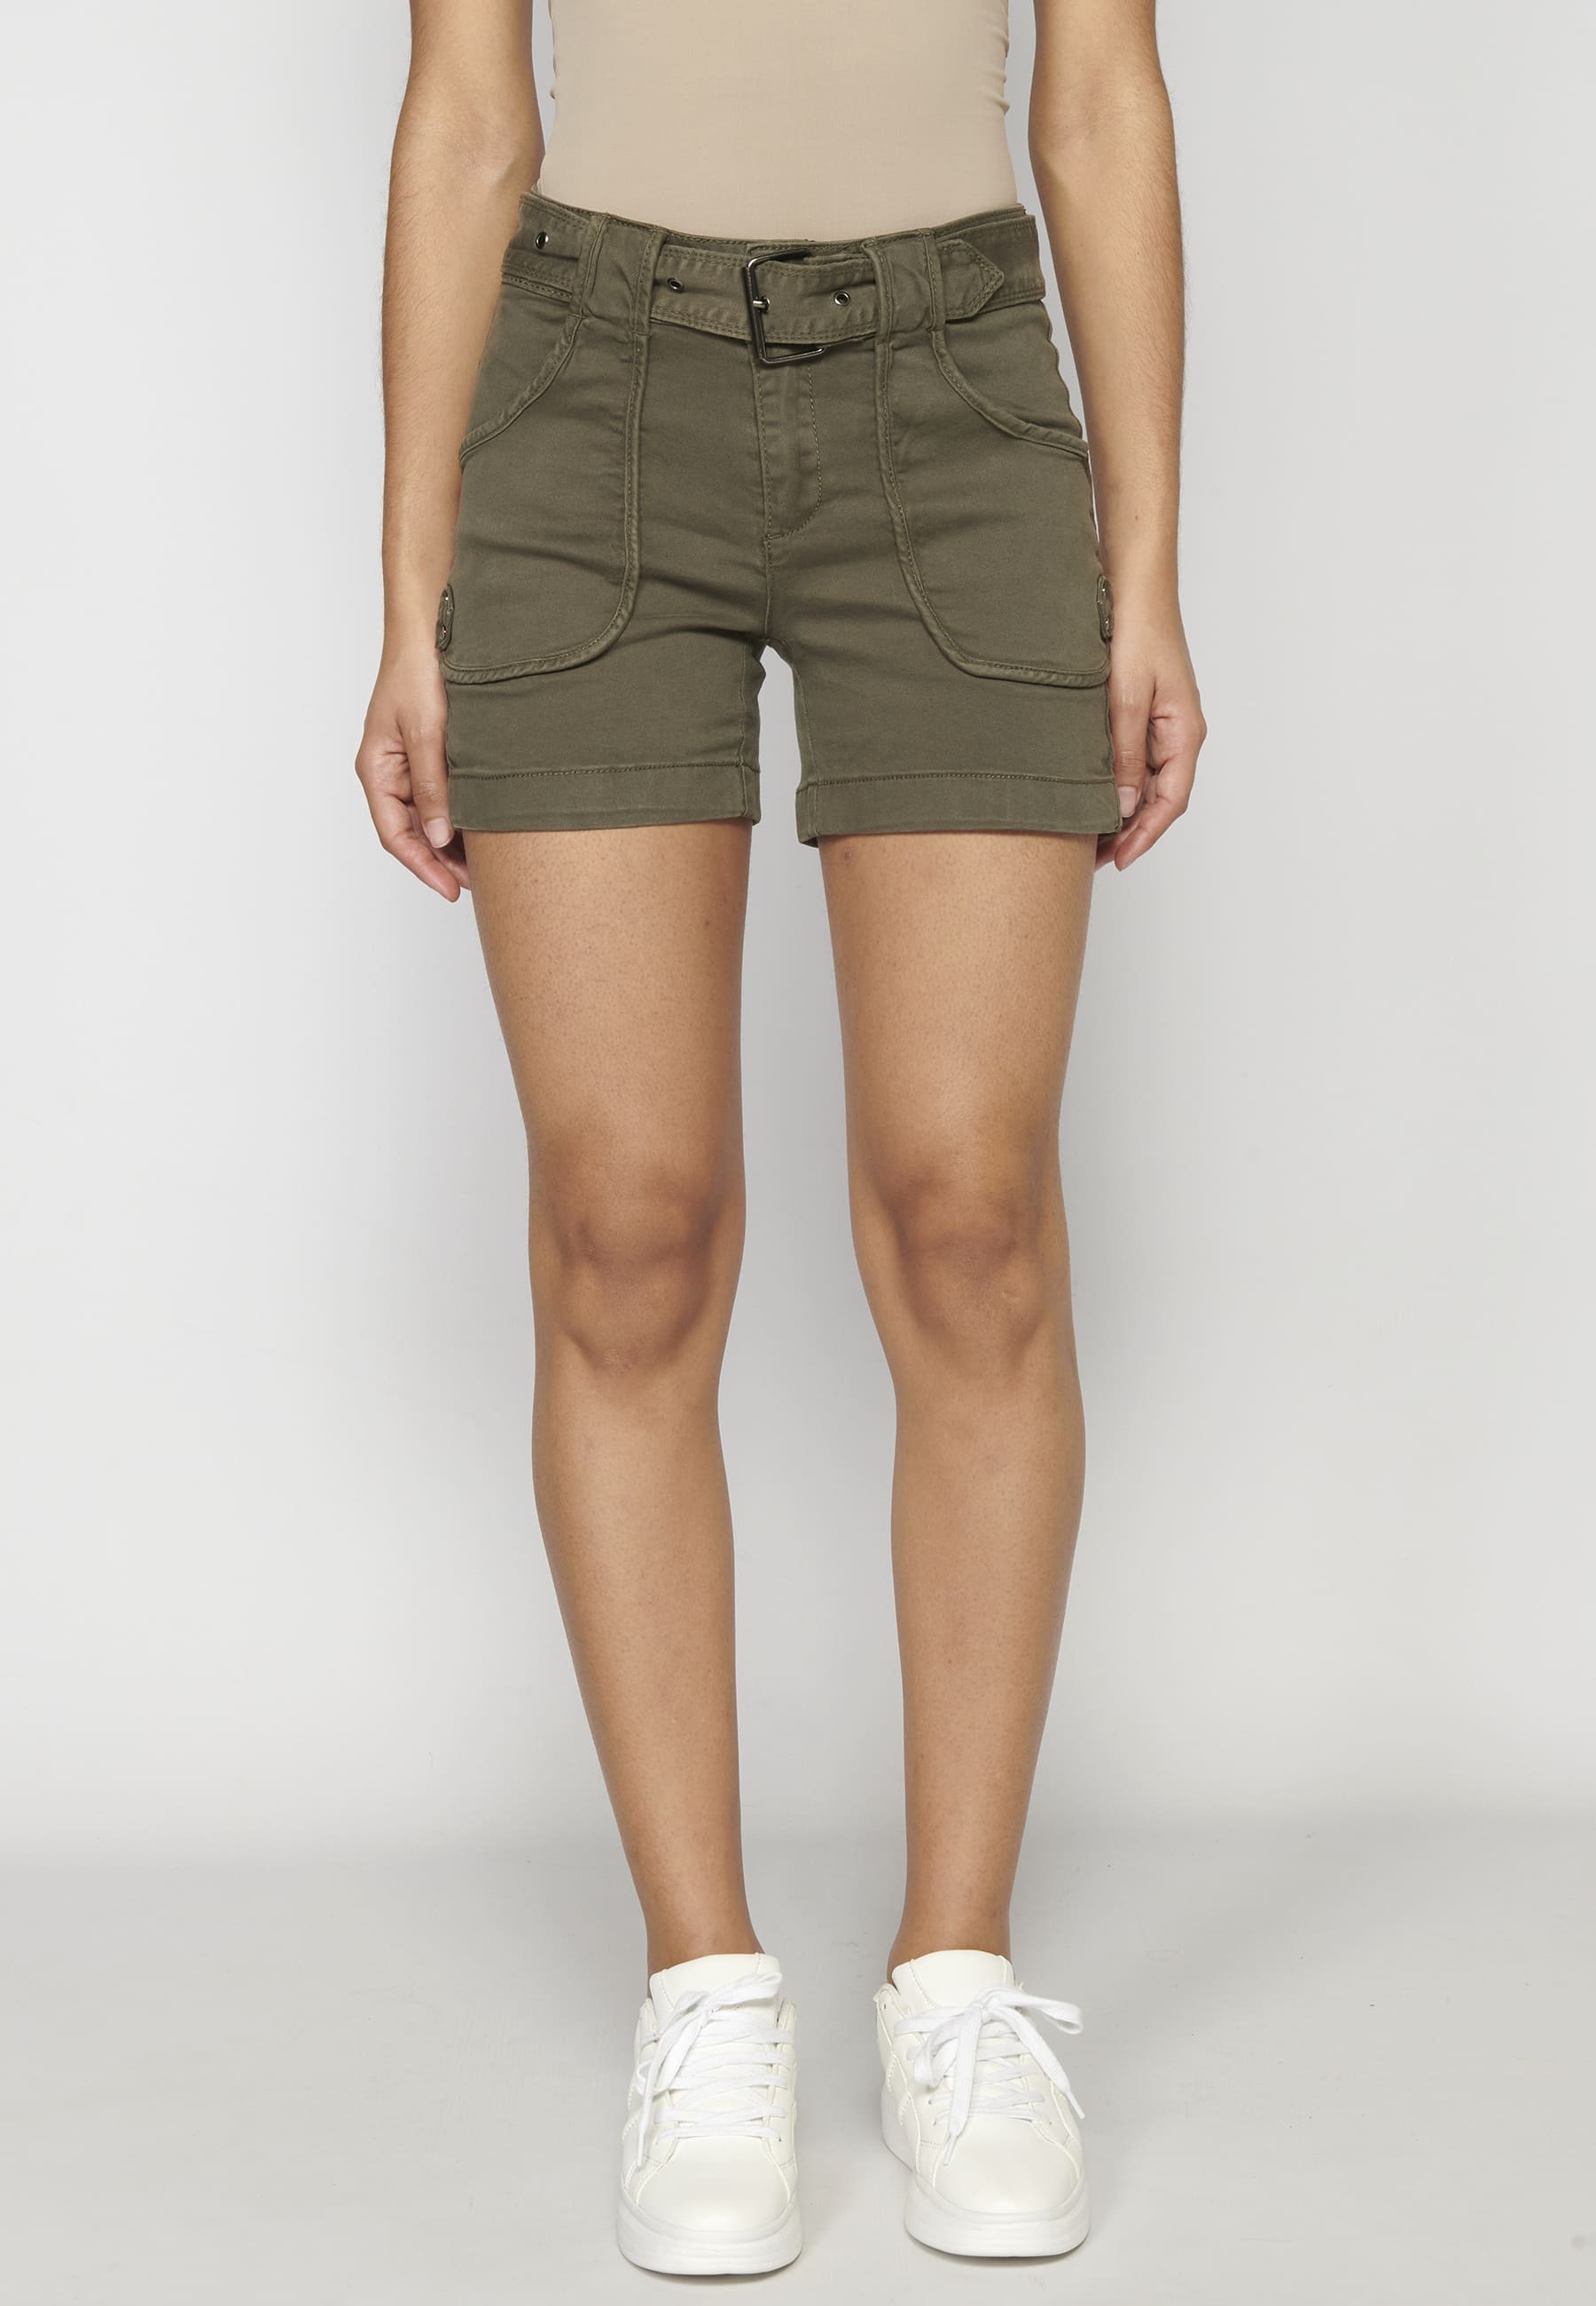 Pantalón corto short con botón y cinturón color kaki para Mujer